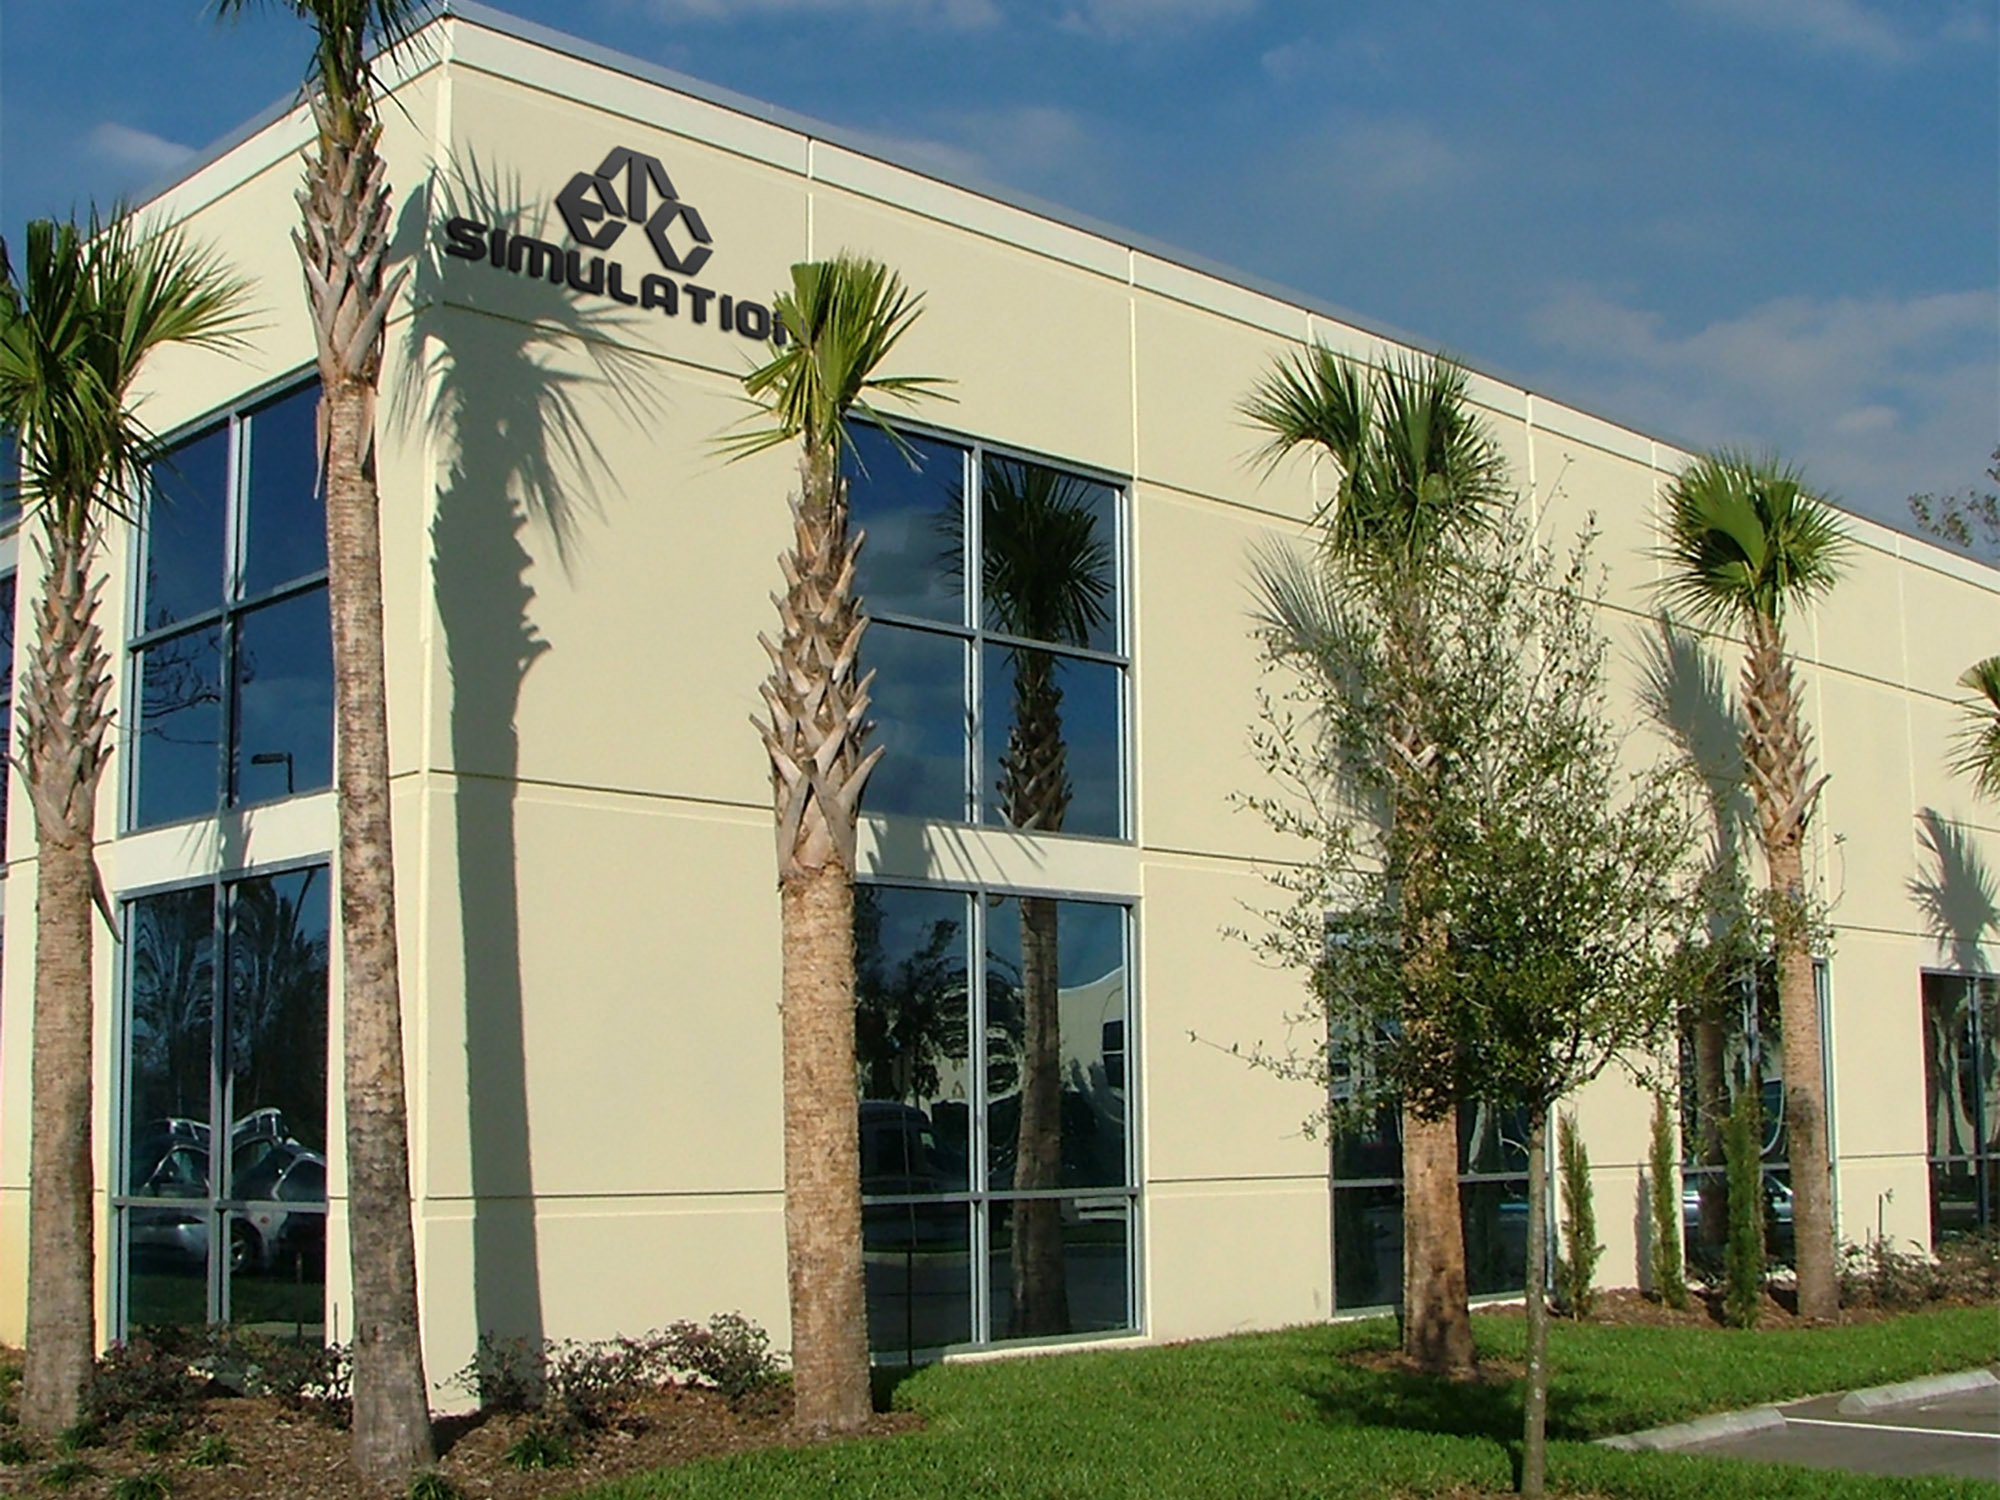 ETC Simulation Office located in Orlando, Florida.